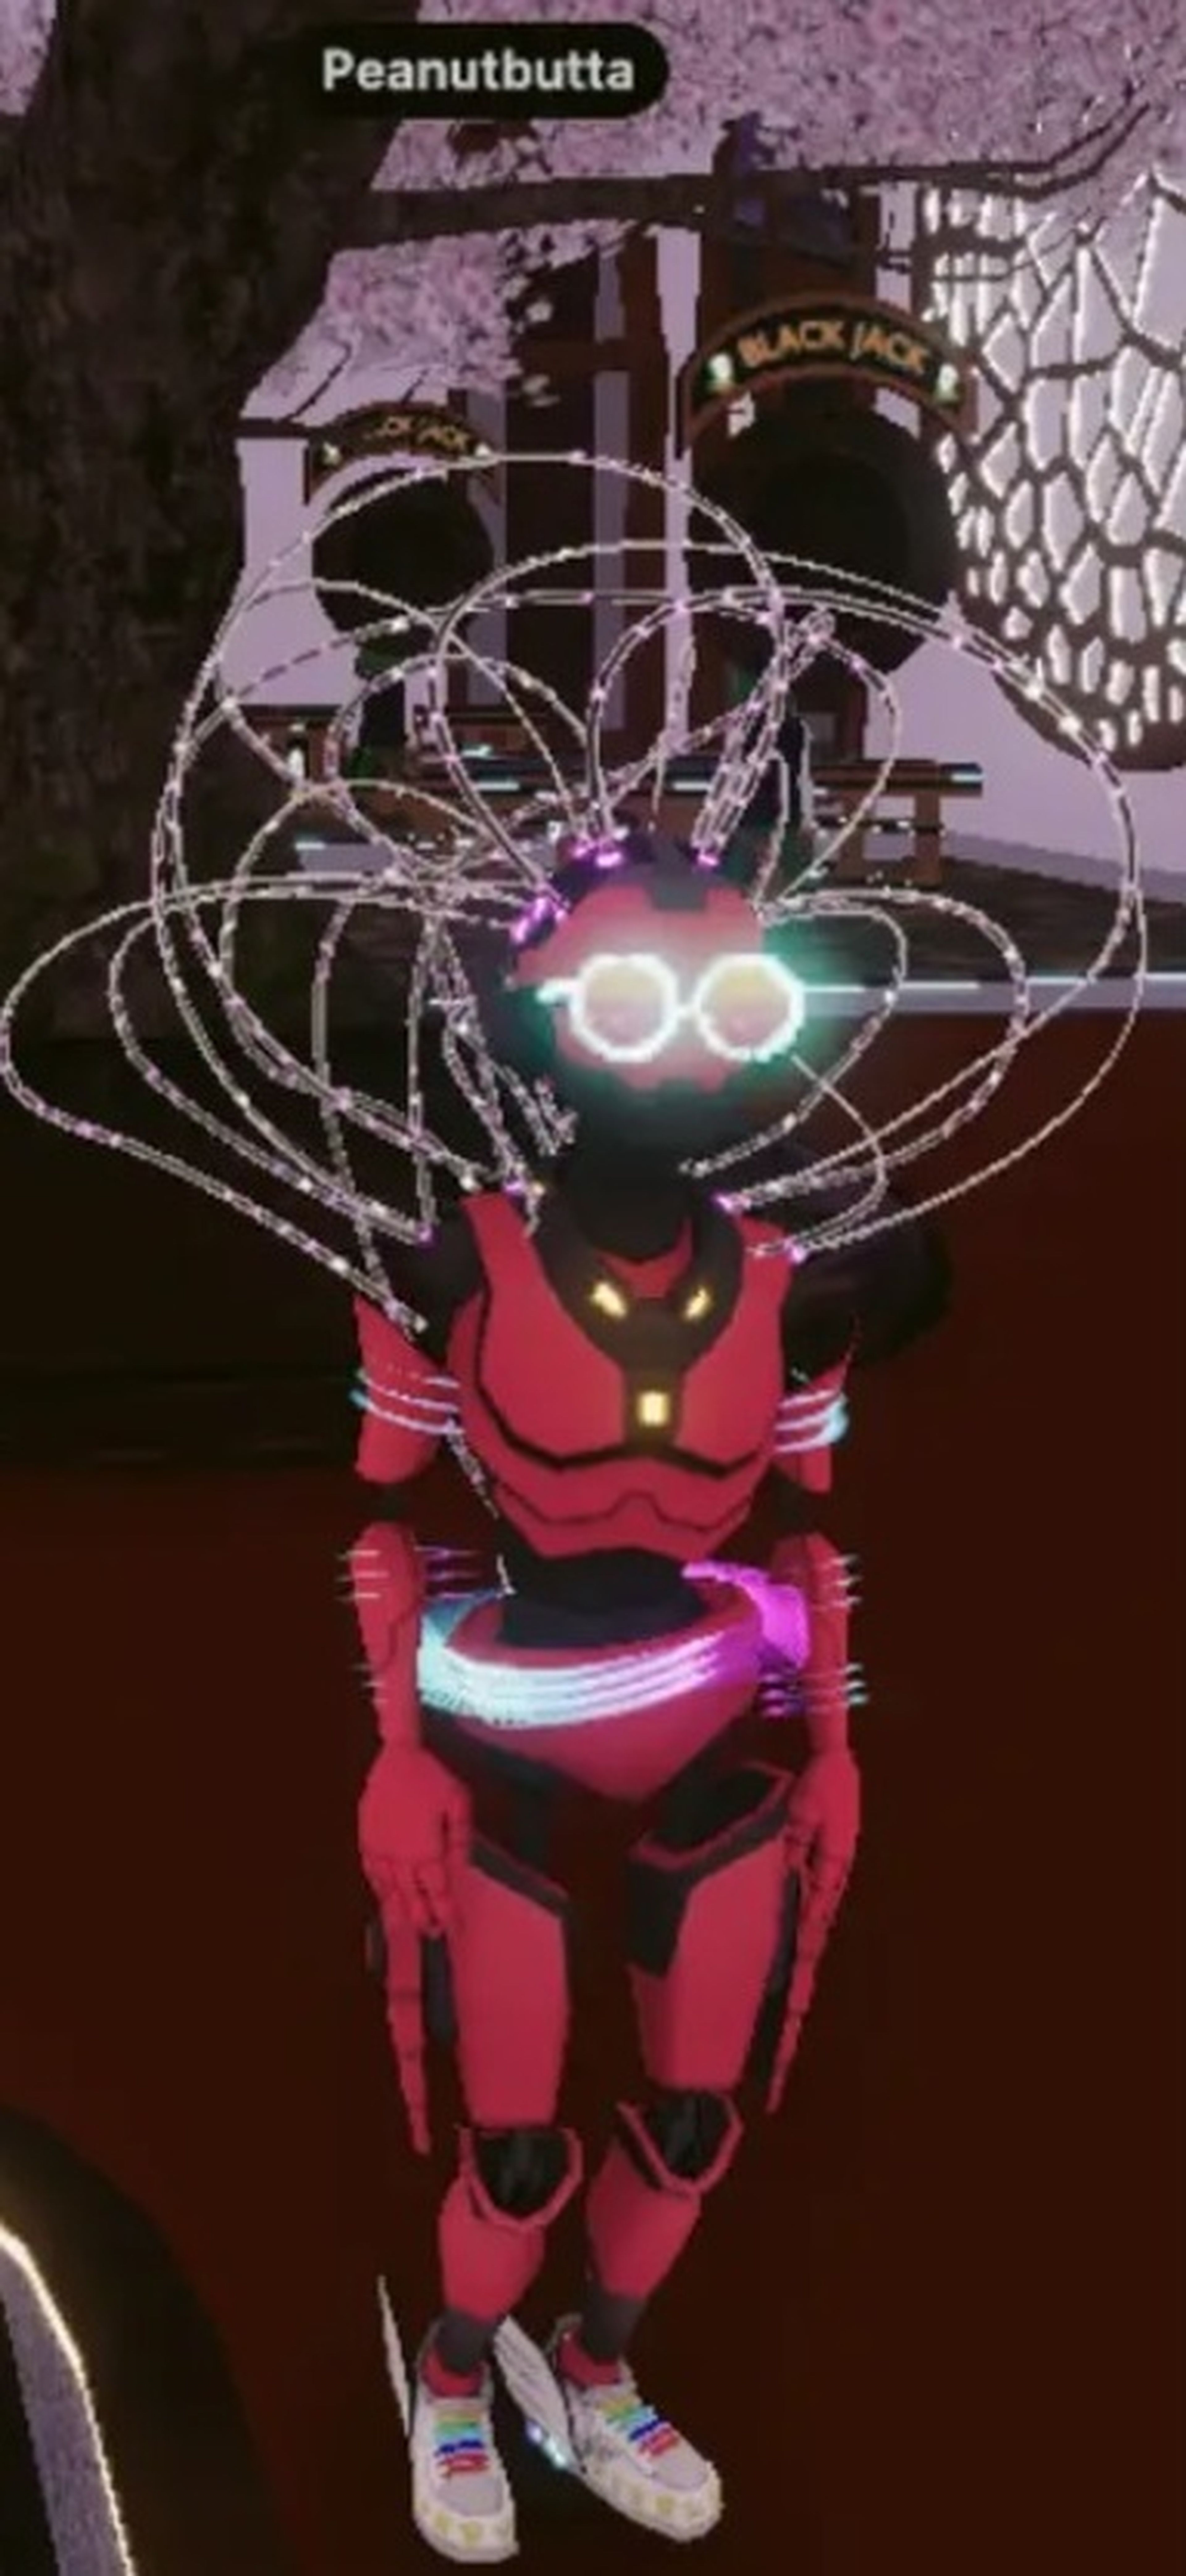 El avatar de PeanutButta lleva un disfraz de robot y unos zapatos, ambos obtenidos de juegos para ganar dinero.